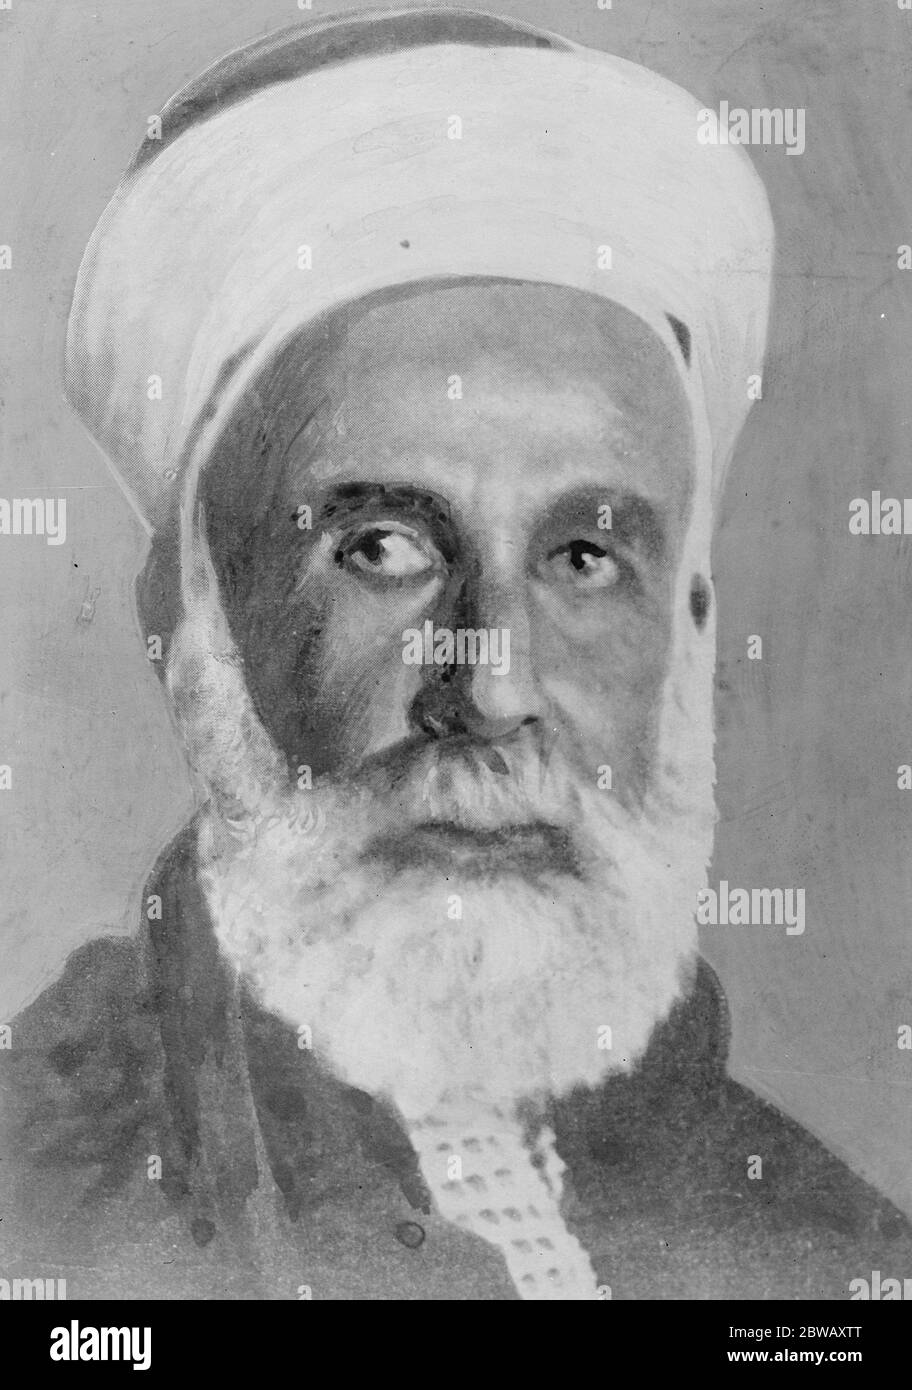 Khalif dell'Islam Nuova scelta possibile la nomina di un Khalif arabo nella persona di re Hussein dell'Hedjaz è prevista a breve 17 Jaunary 1923 Foto Stock